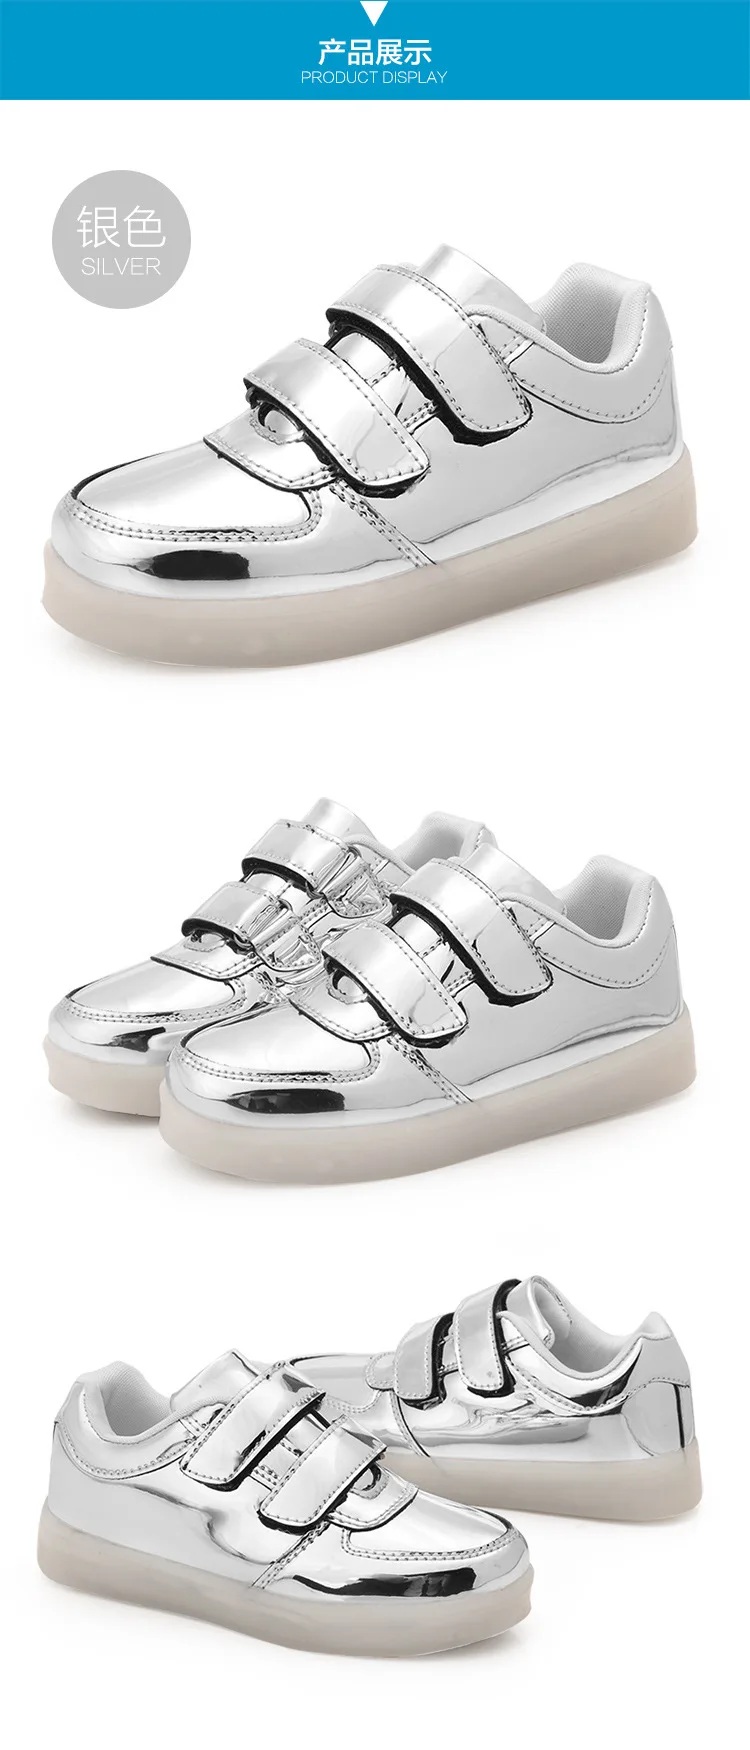 Kashiluo/детская обувь со светодиодной подсветкой; кроссовки с зарядкой через usb; детская модная светящаяся обувь на липучке; светящаяся обувь для мальчиков и девочек